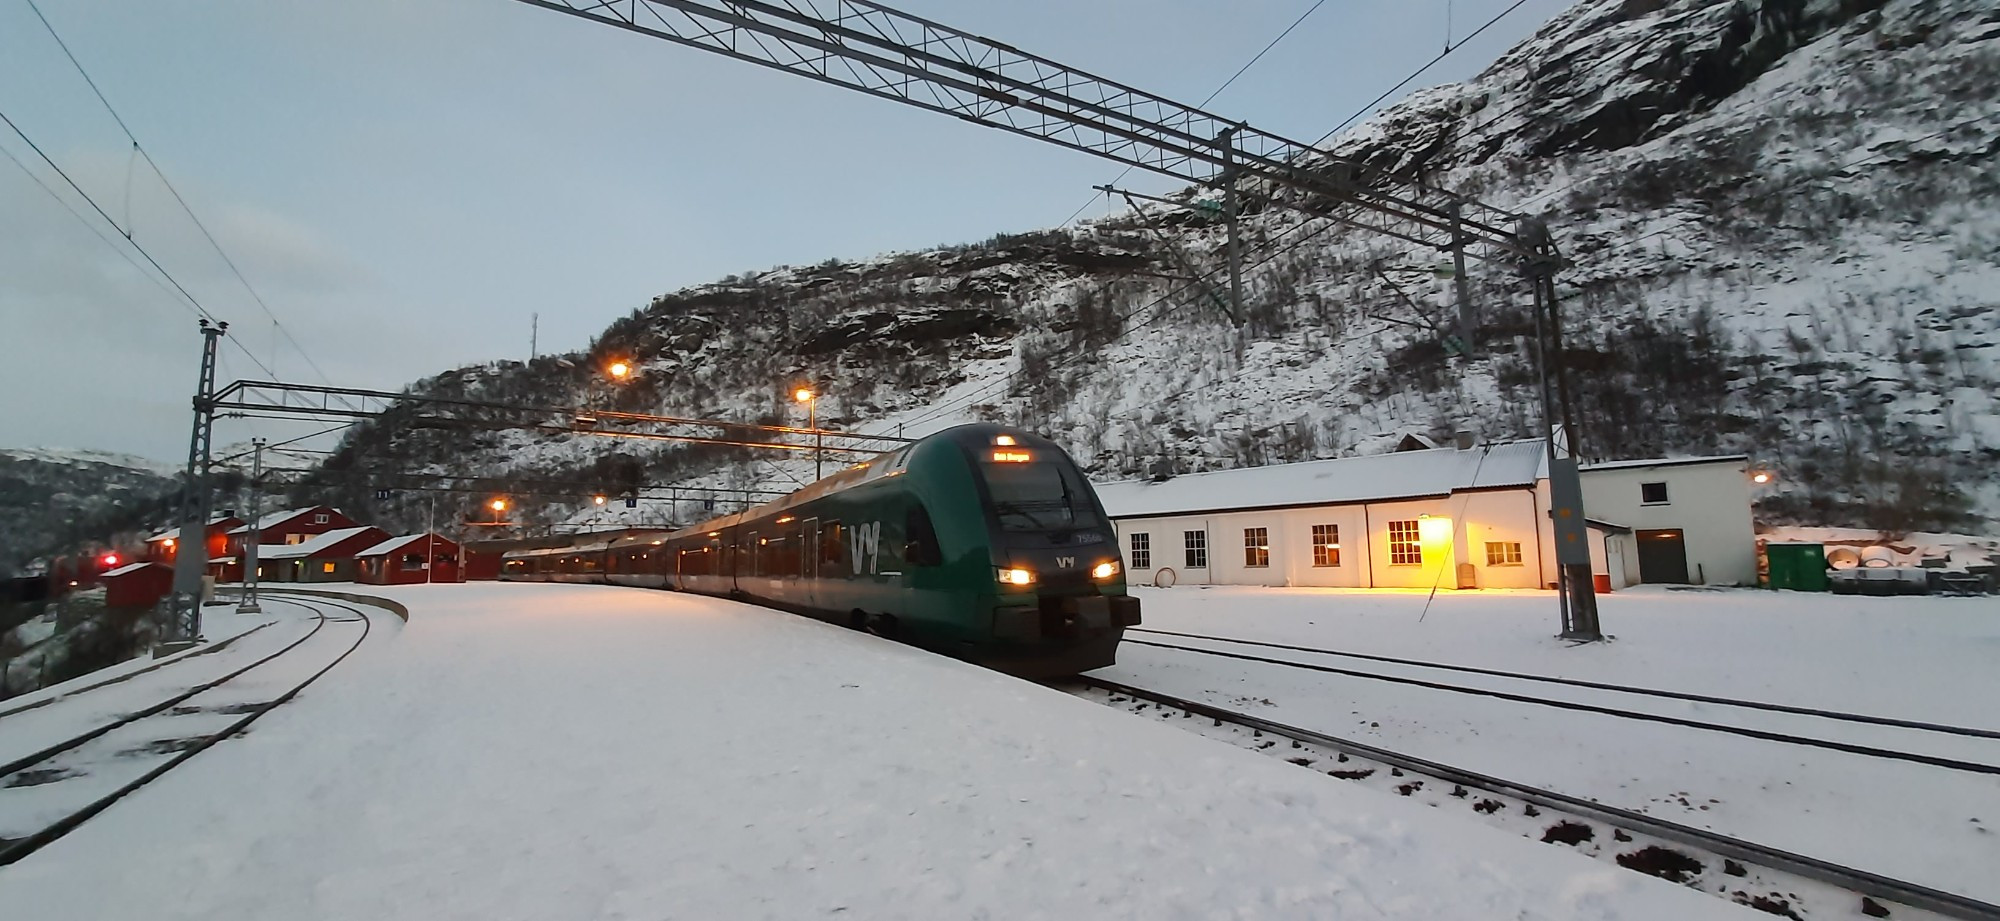 Myrdal station, Norway